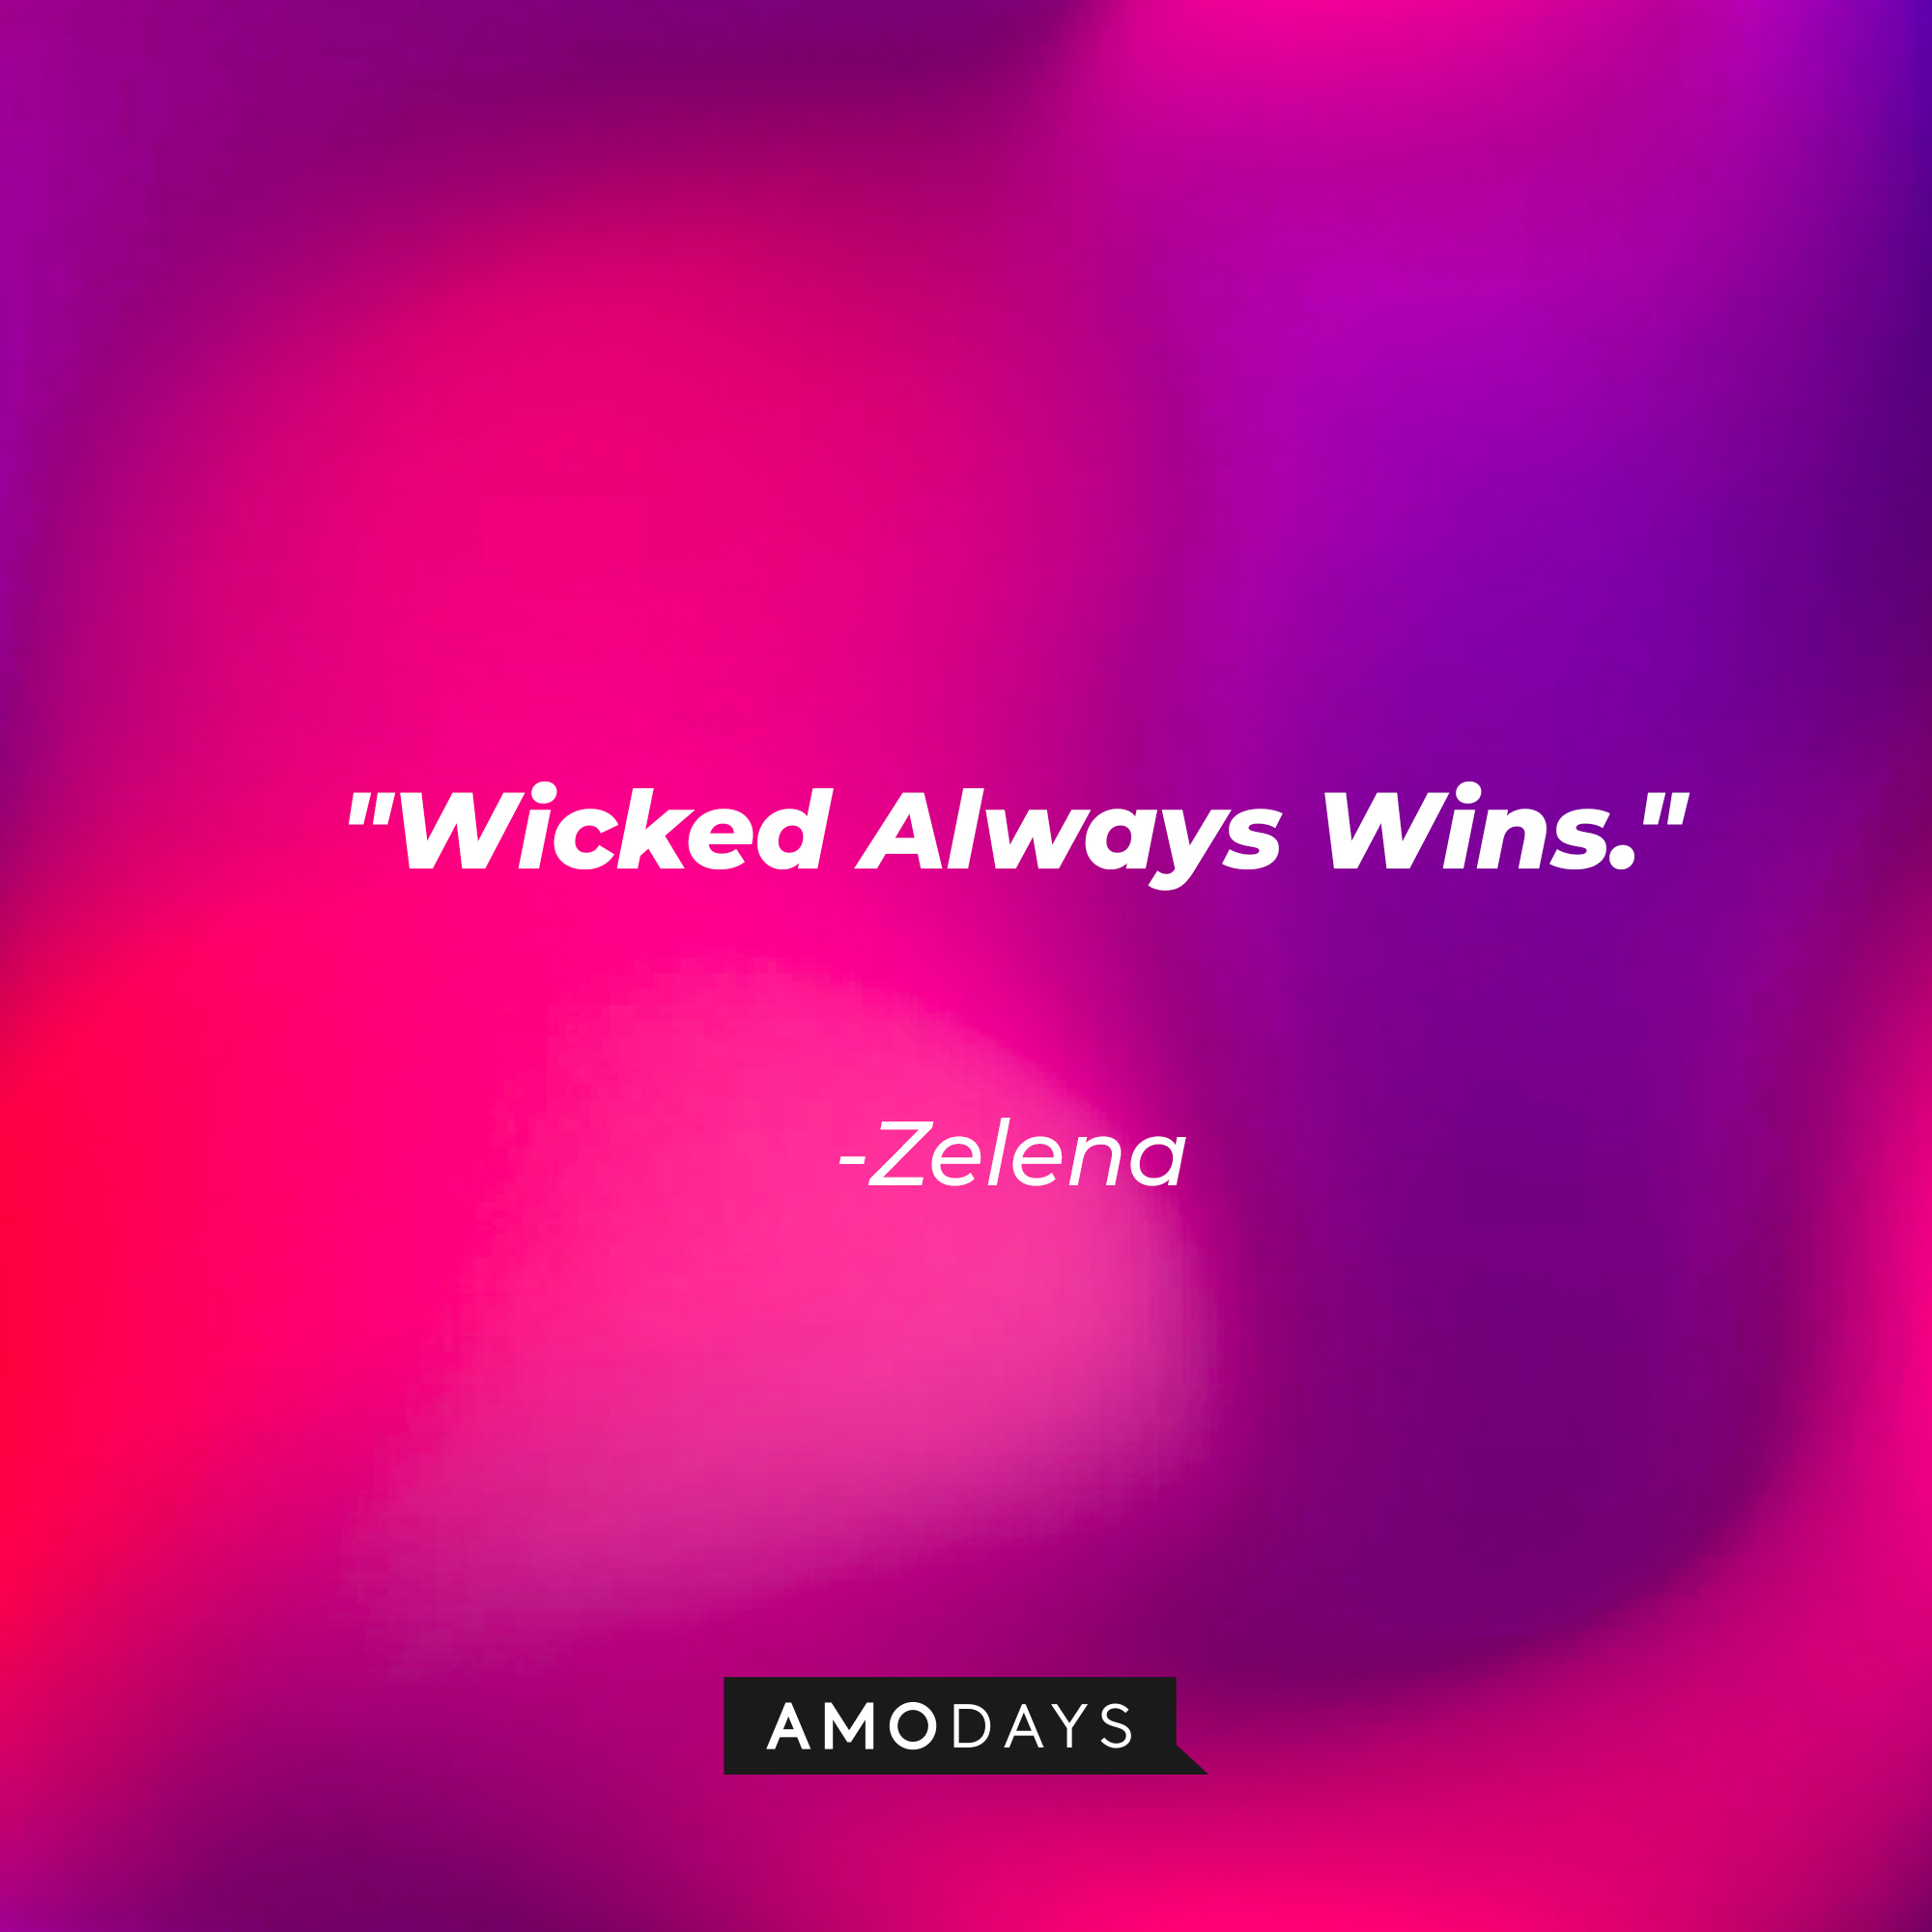 Zelena's quote: "Wicked Always Wins."  | Source: Amodays